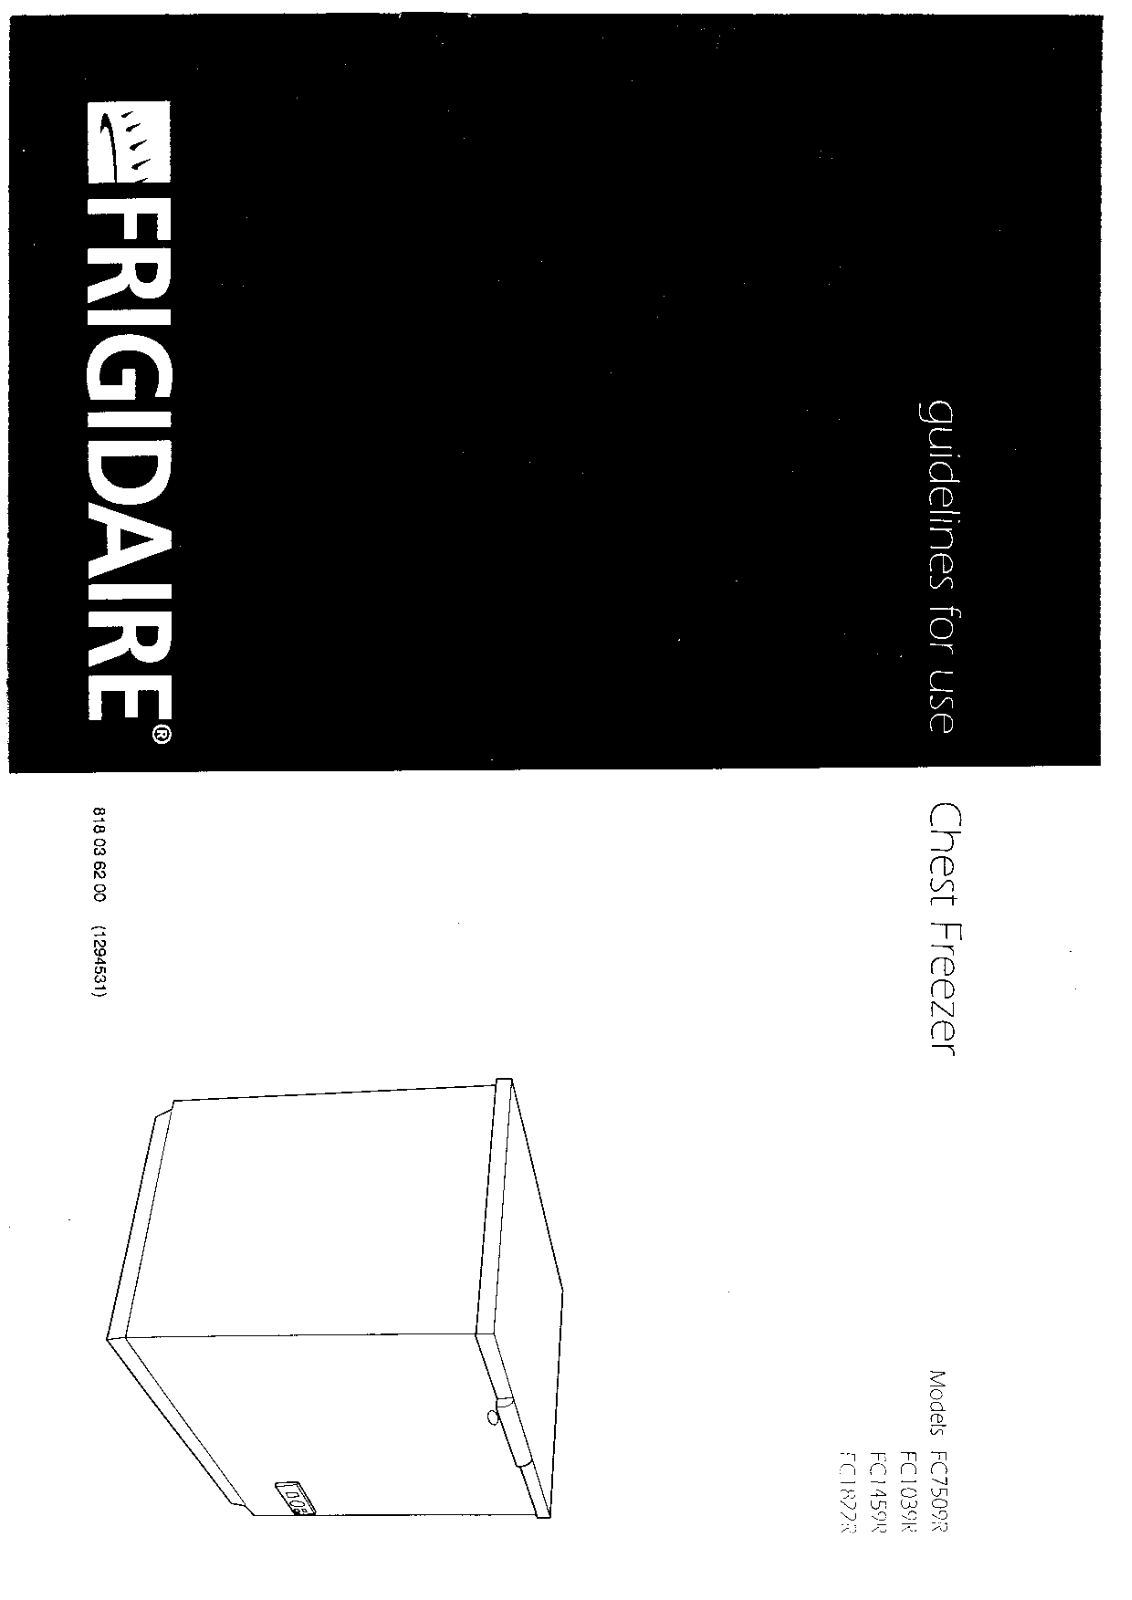 Frigidaire FC7509R, FC1039R, FC1822R, FC1459R Manual